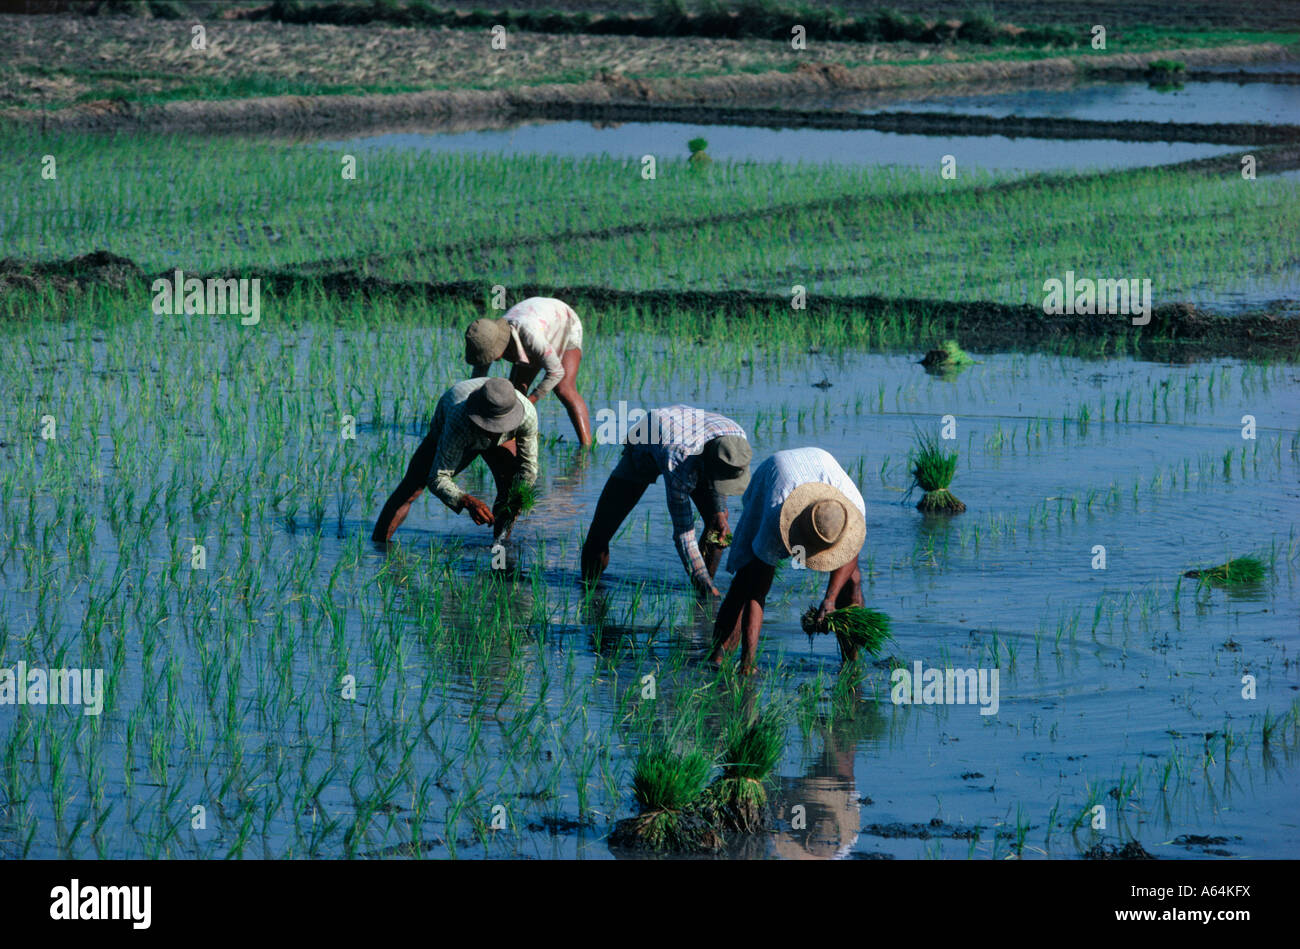 Agriculteur de paddy dans les rizières de la région de la vallée d'Ifugao banaue île de Luzon aux Philippines Banque D'Images